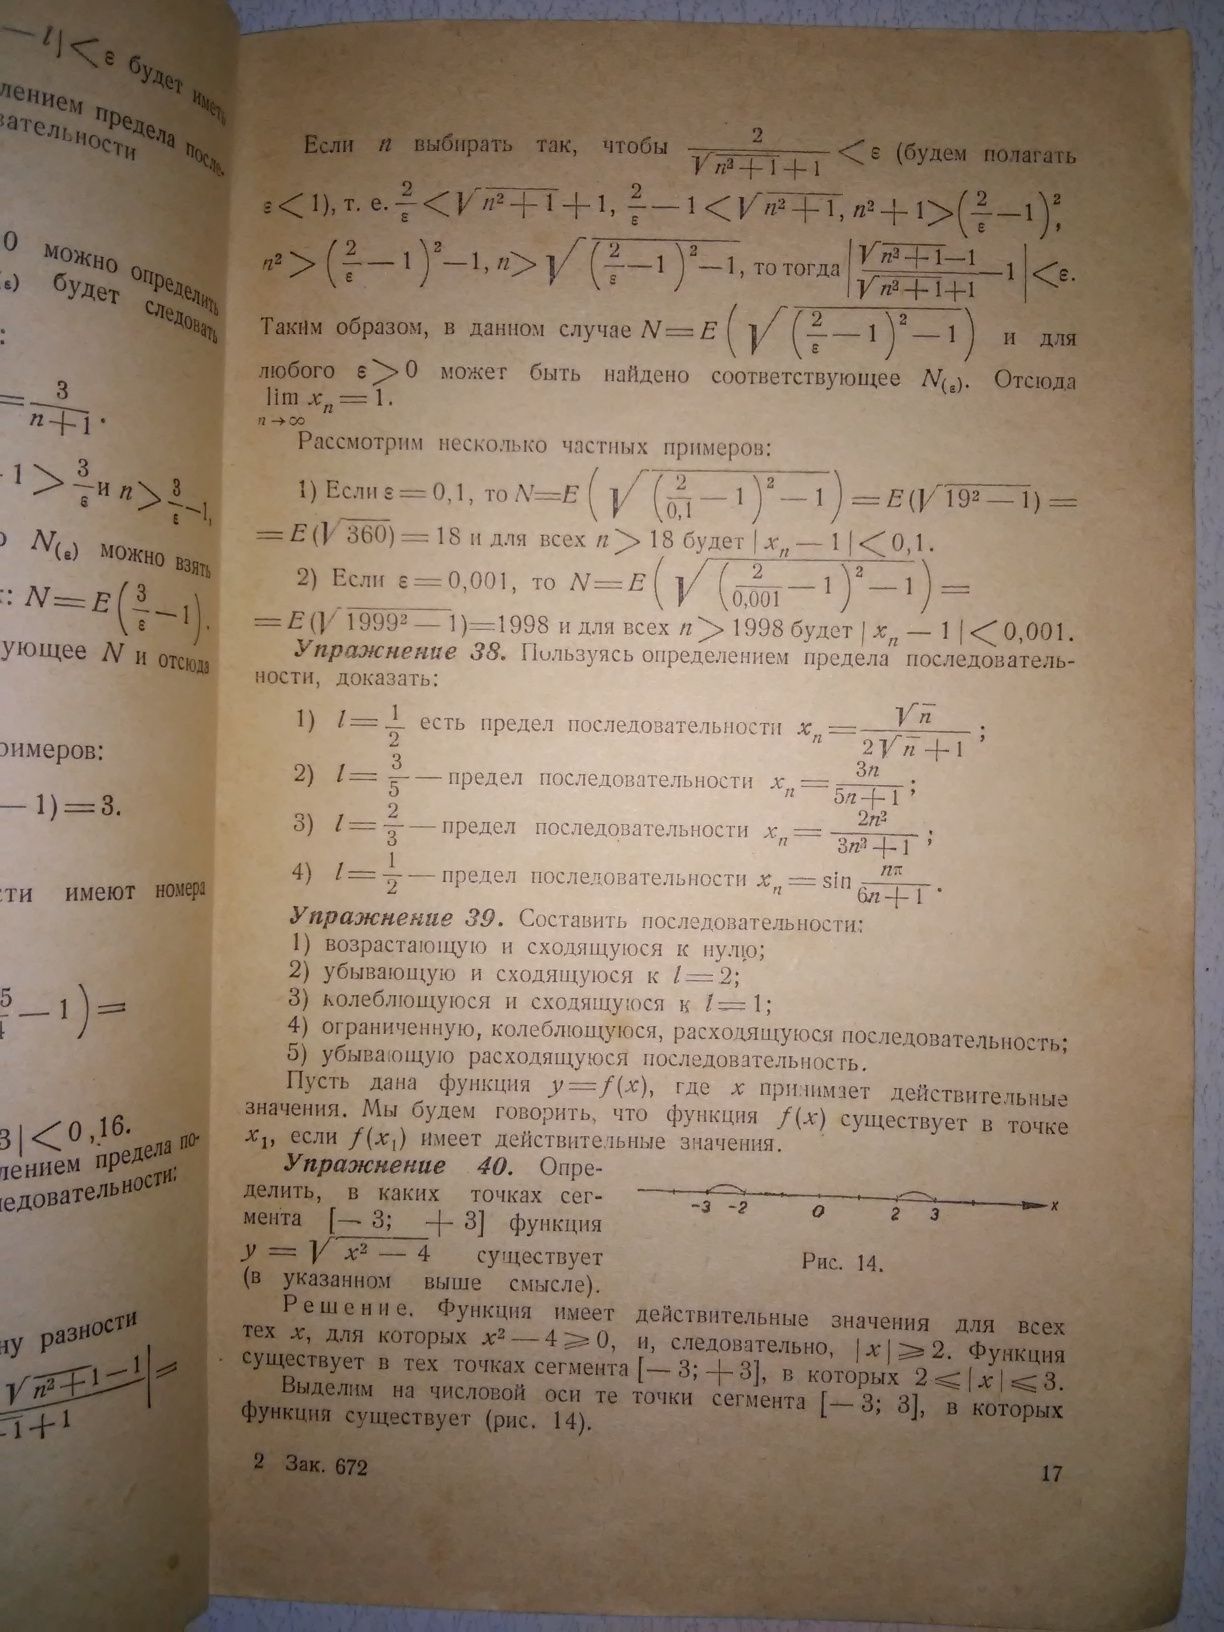 Погорелов Сборник задач по высшей математике 1949 р.